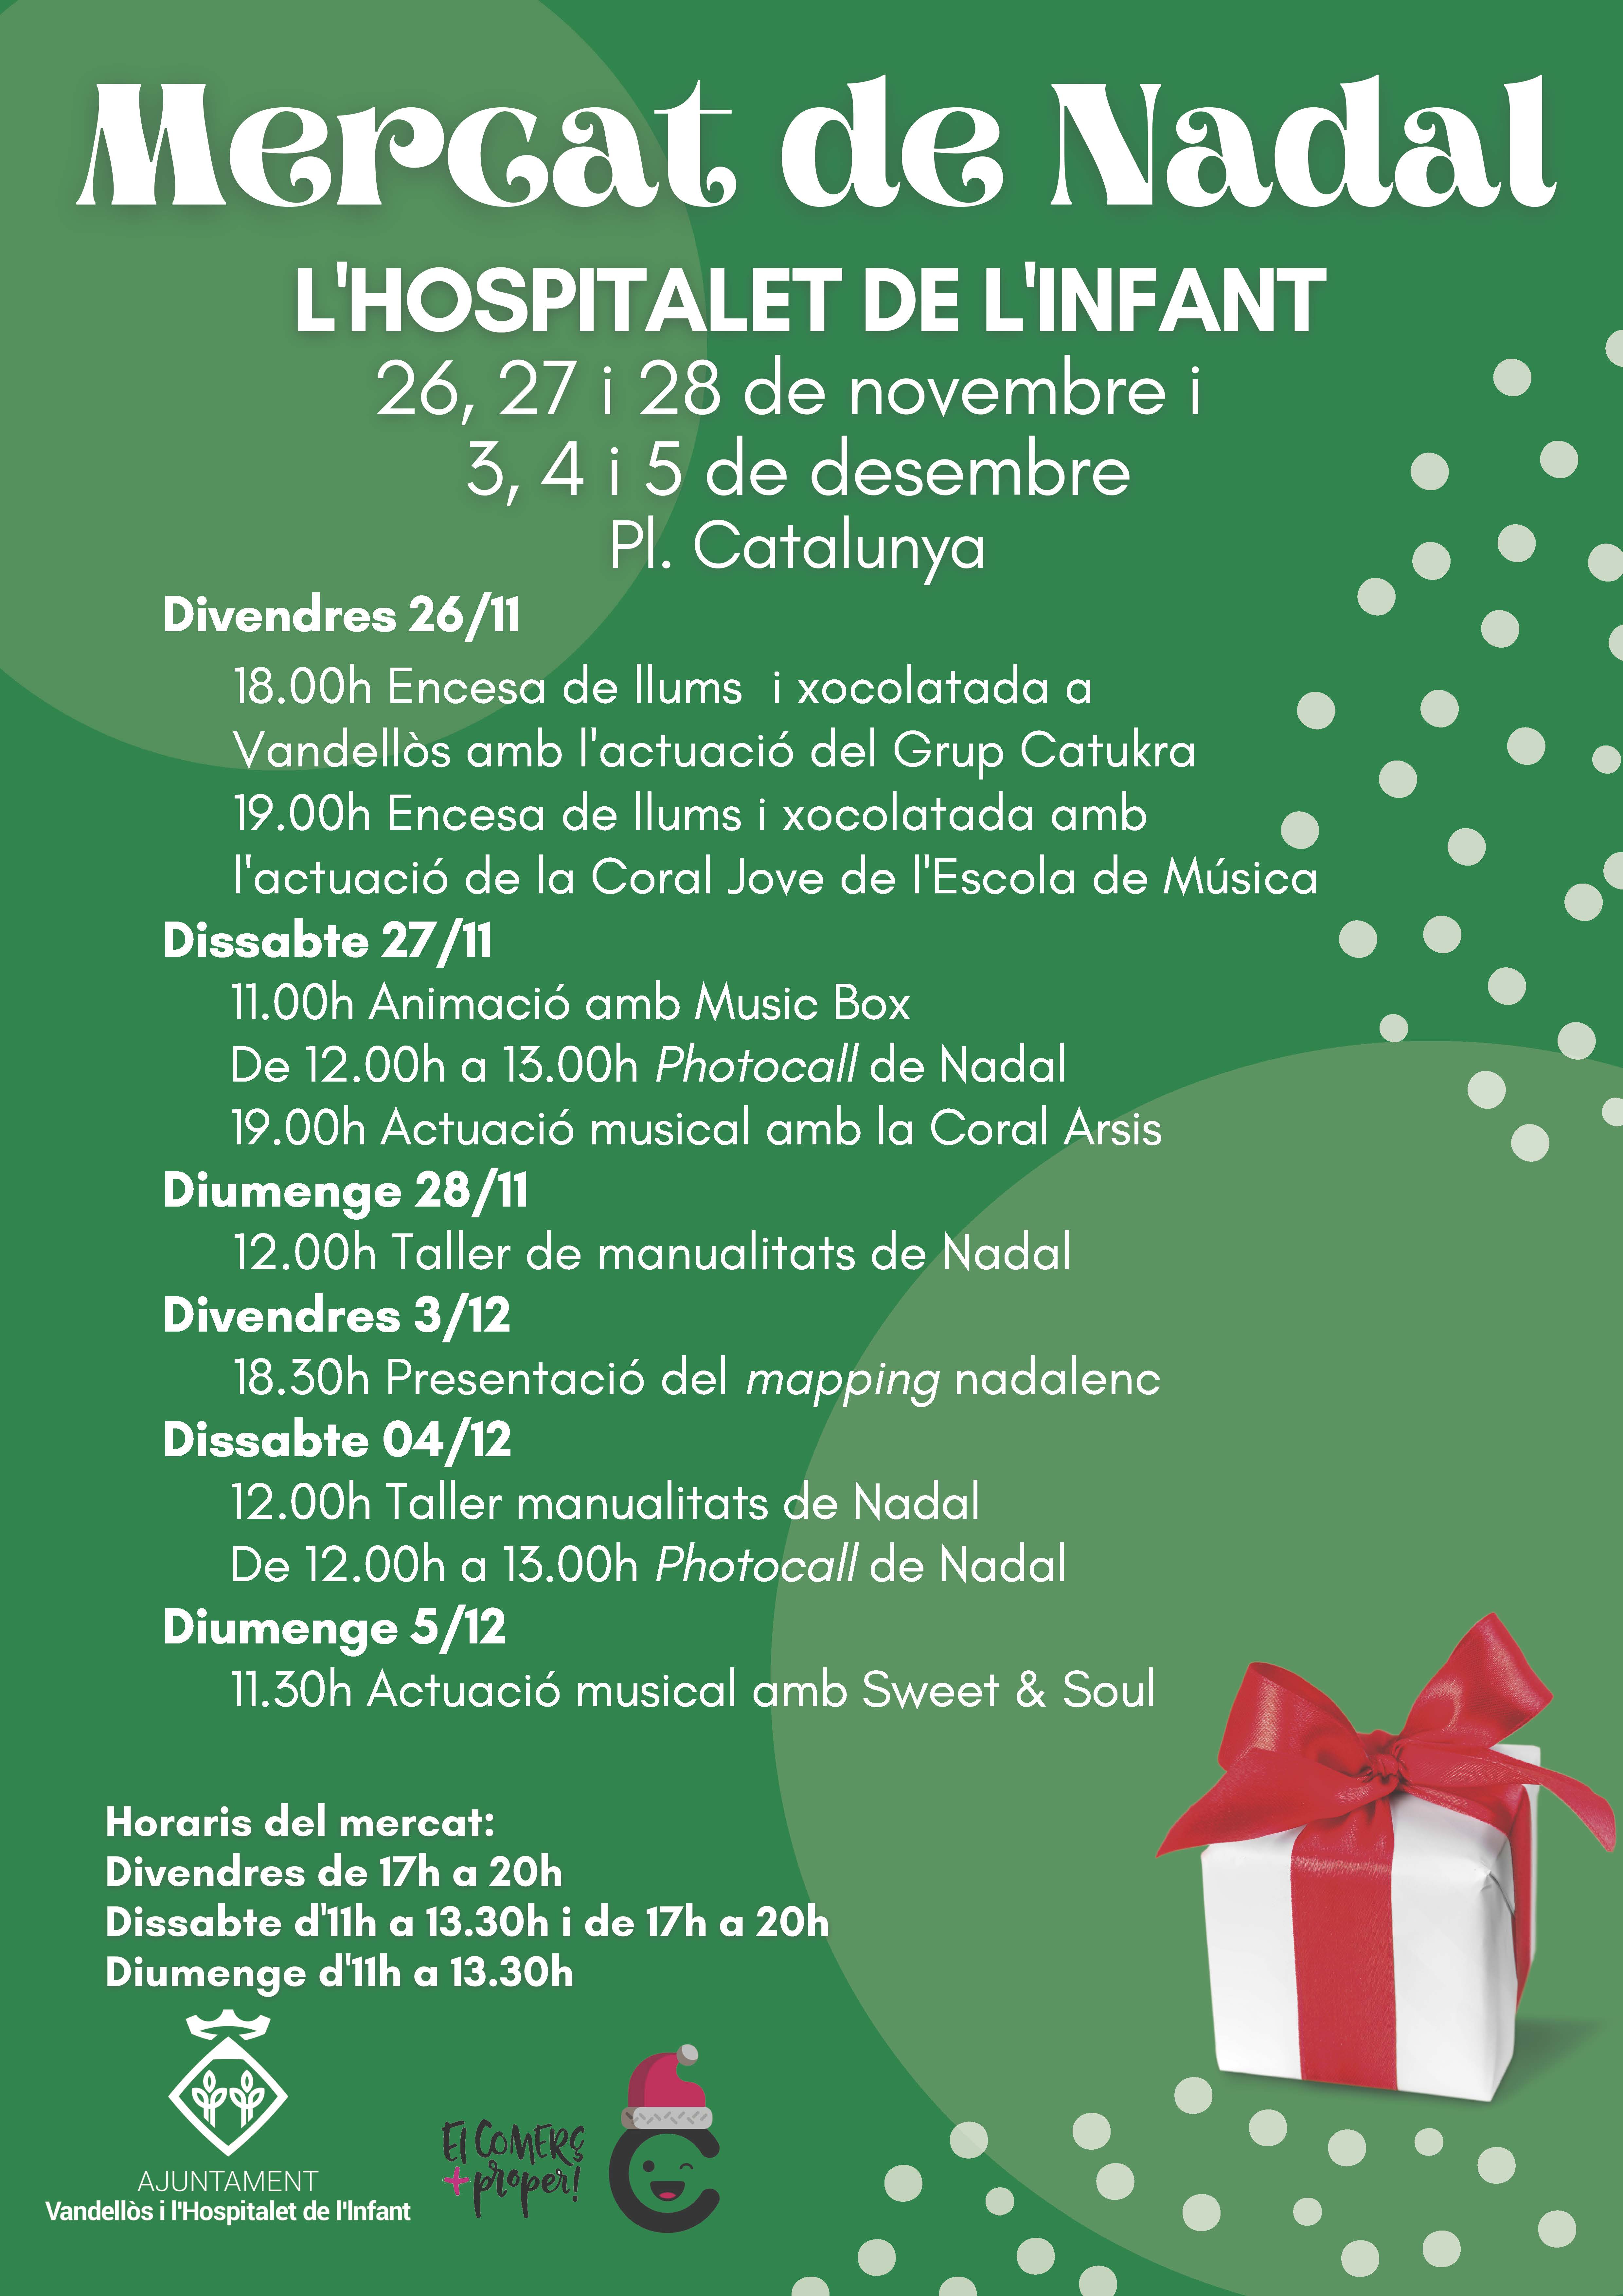 El Mercat de Nadal de l’Hospitalet de l’Infant s’obrirà aquest divendres 26 de novembre